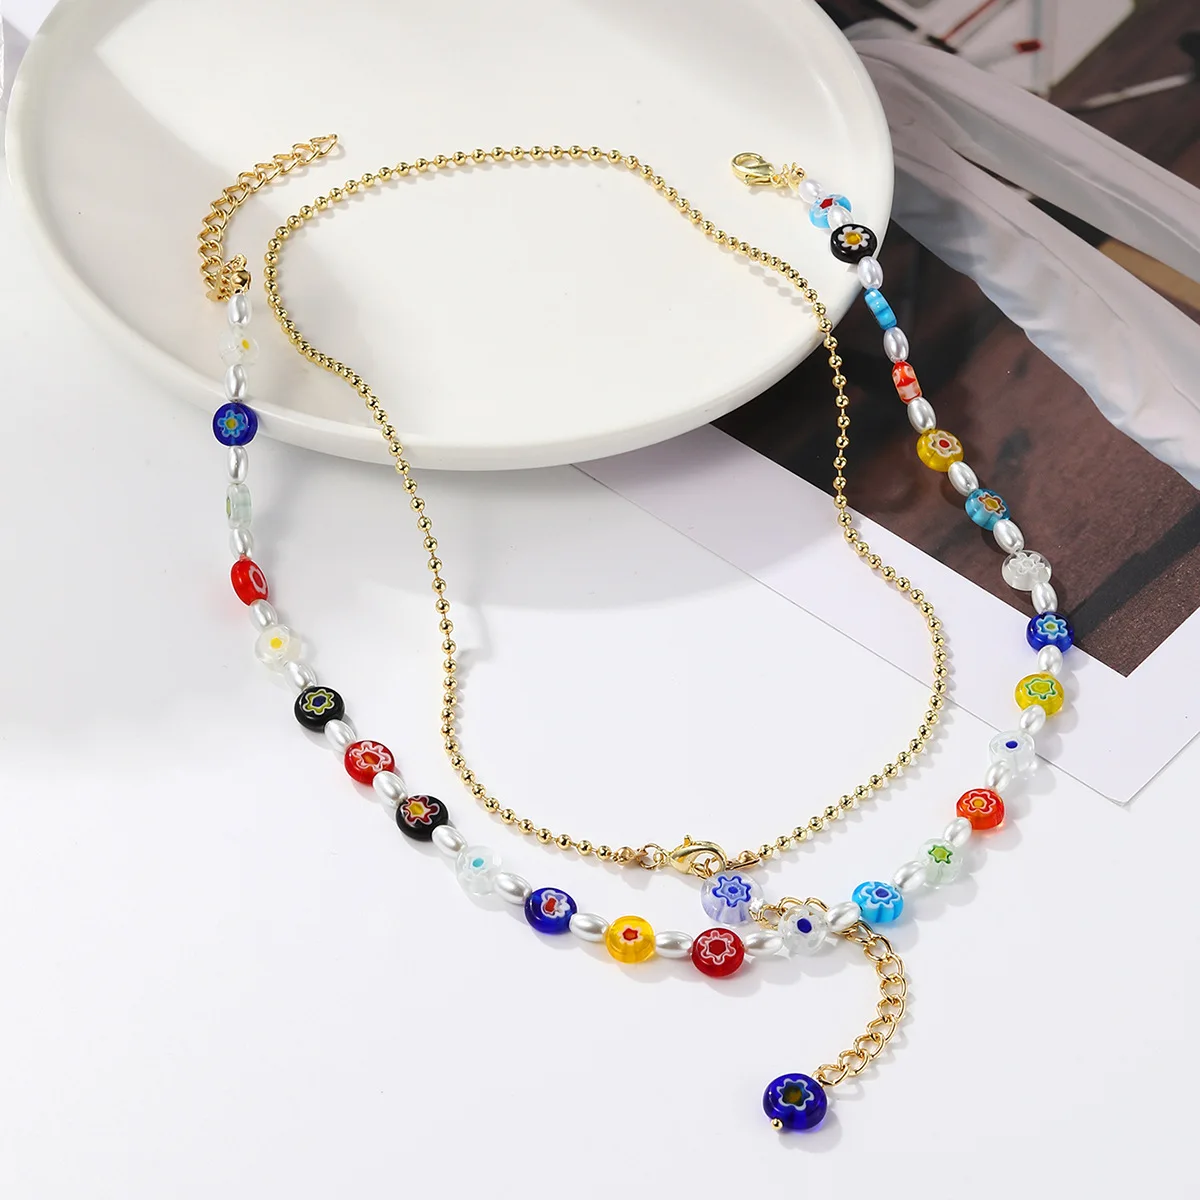 DQQ New Fashion Lady Star многослойное ожерелье с цепочками из металла для женщин, ювелирные изделия для вечеринок, набор ожерелий Pandant 2